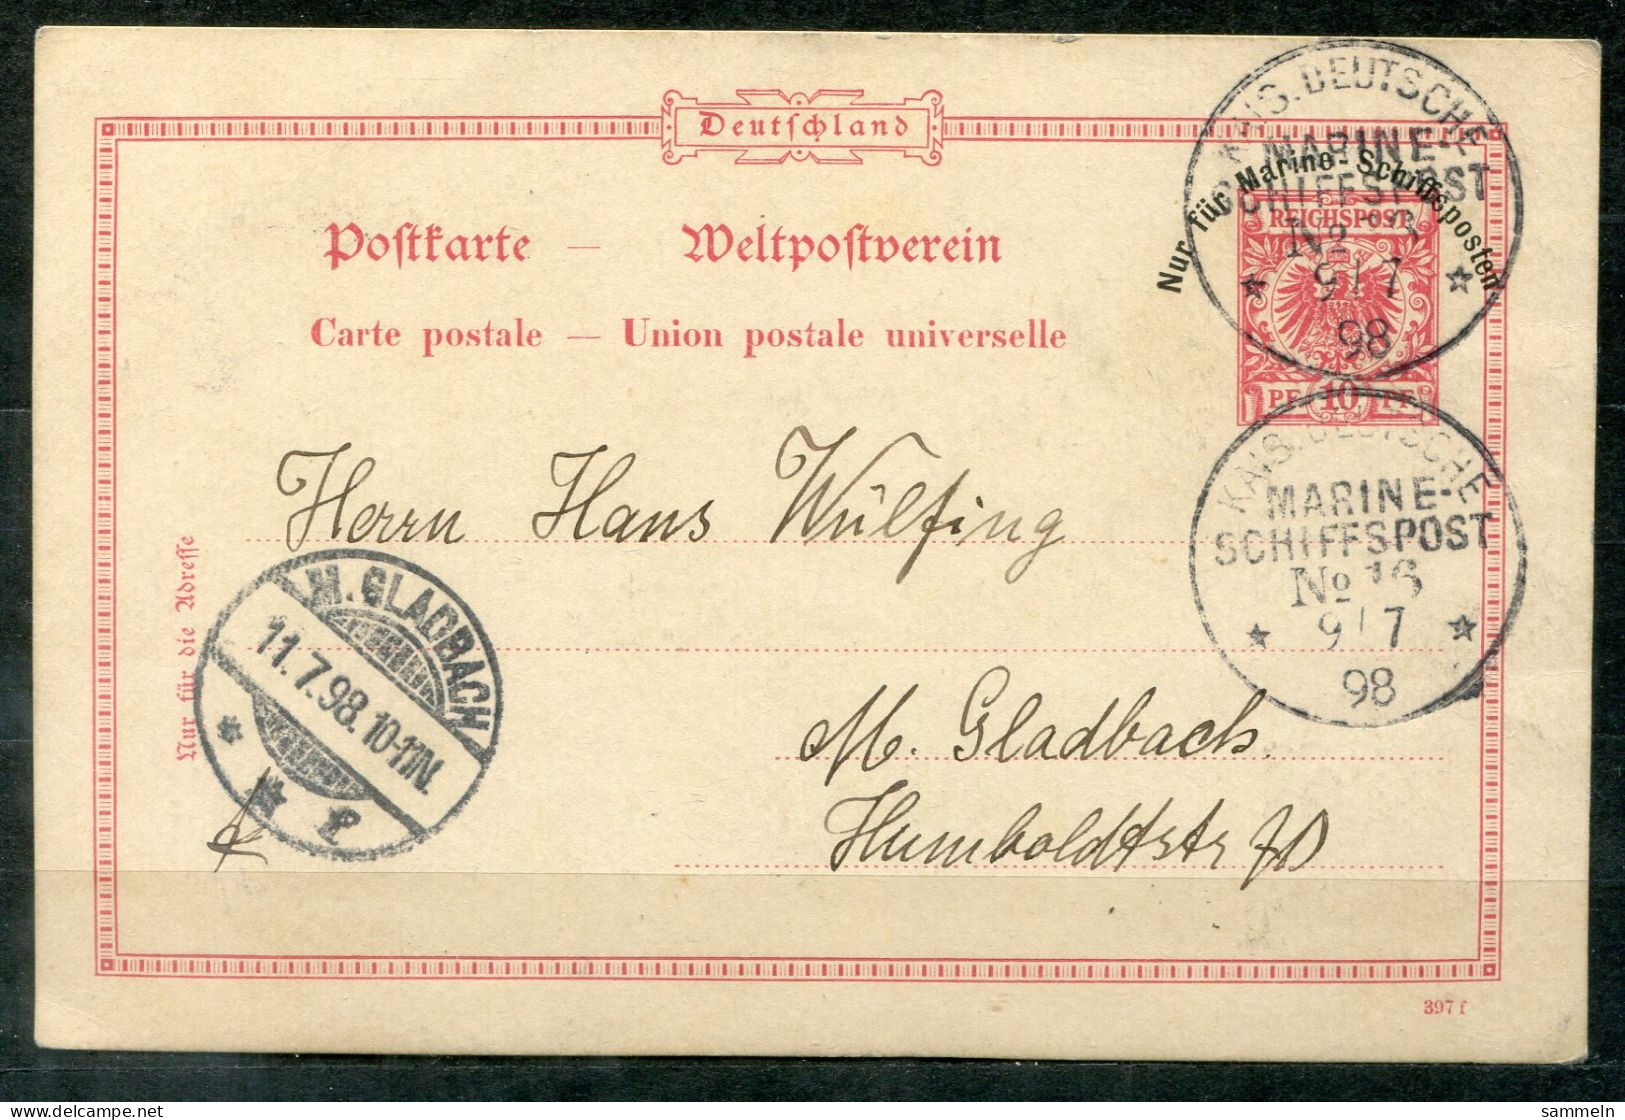 DEUTSCHES REICH - Schiffspost, Navire, Paquebot, Ship Letter, Stempel MARINE-SCHIFFSPOST No.16, 9.7.98 - Postcards